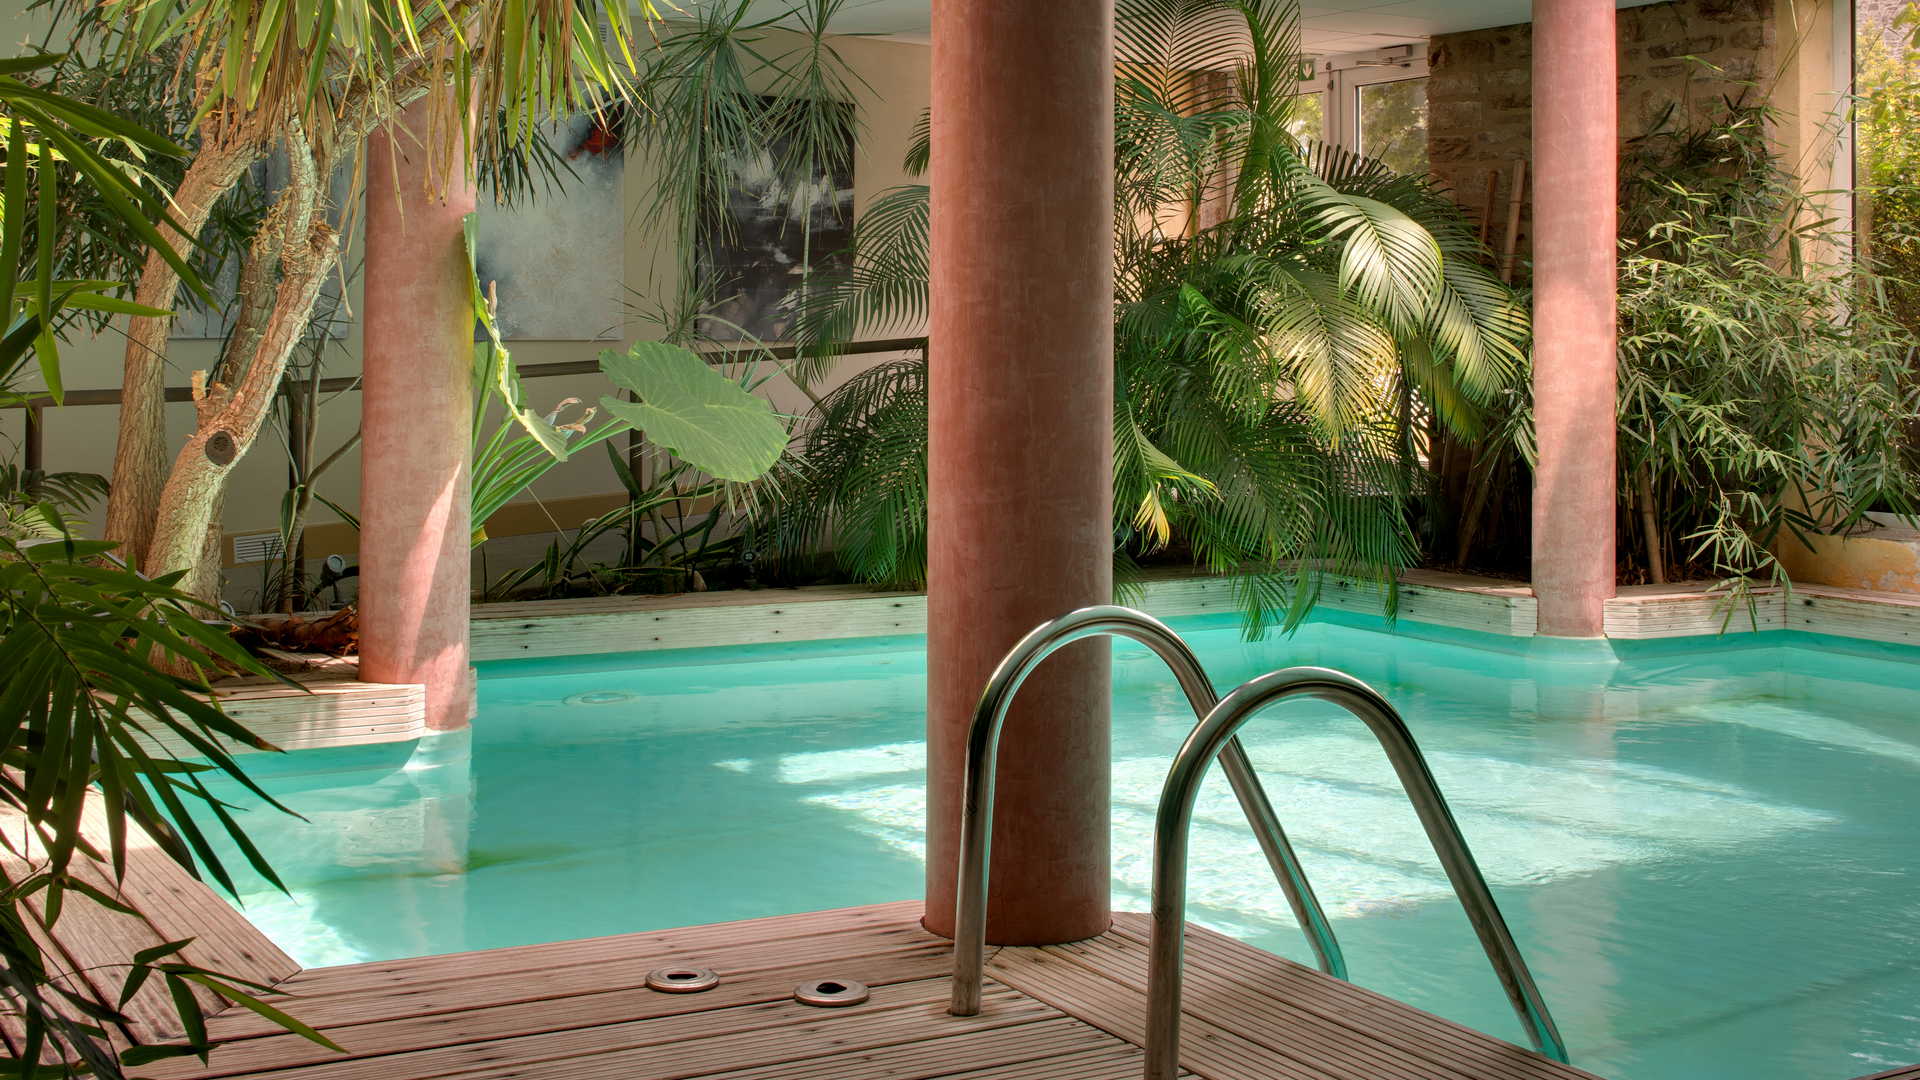 Patio végétal avec piscine, hôtel de charme Aveyron, Le Sénéchal